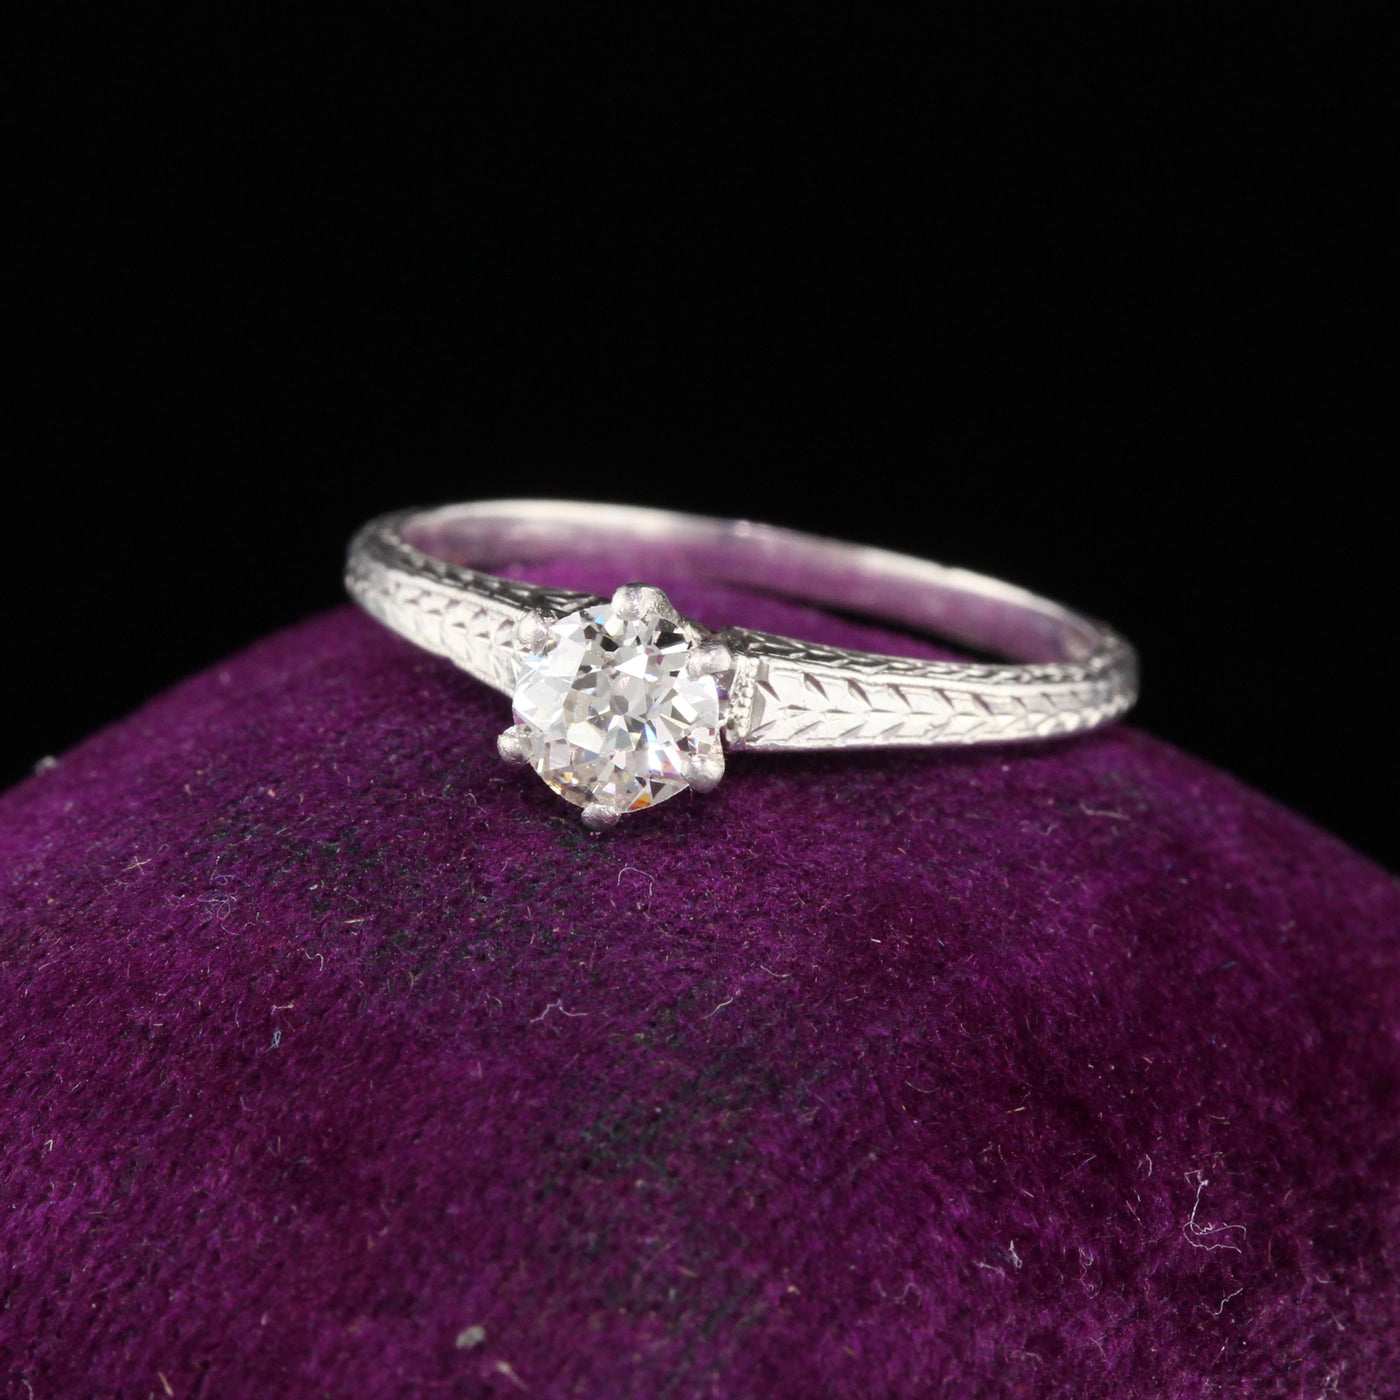 Antique Art Deco Platinum Diamond Engagement Ring - The Antique Parlour